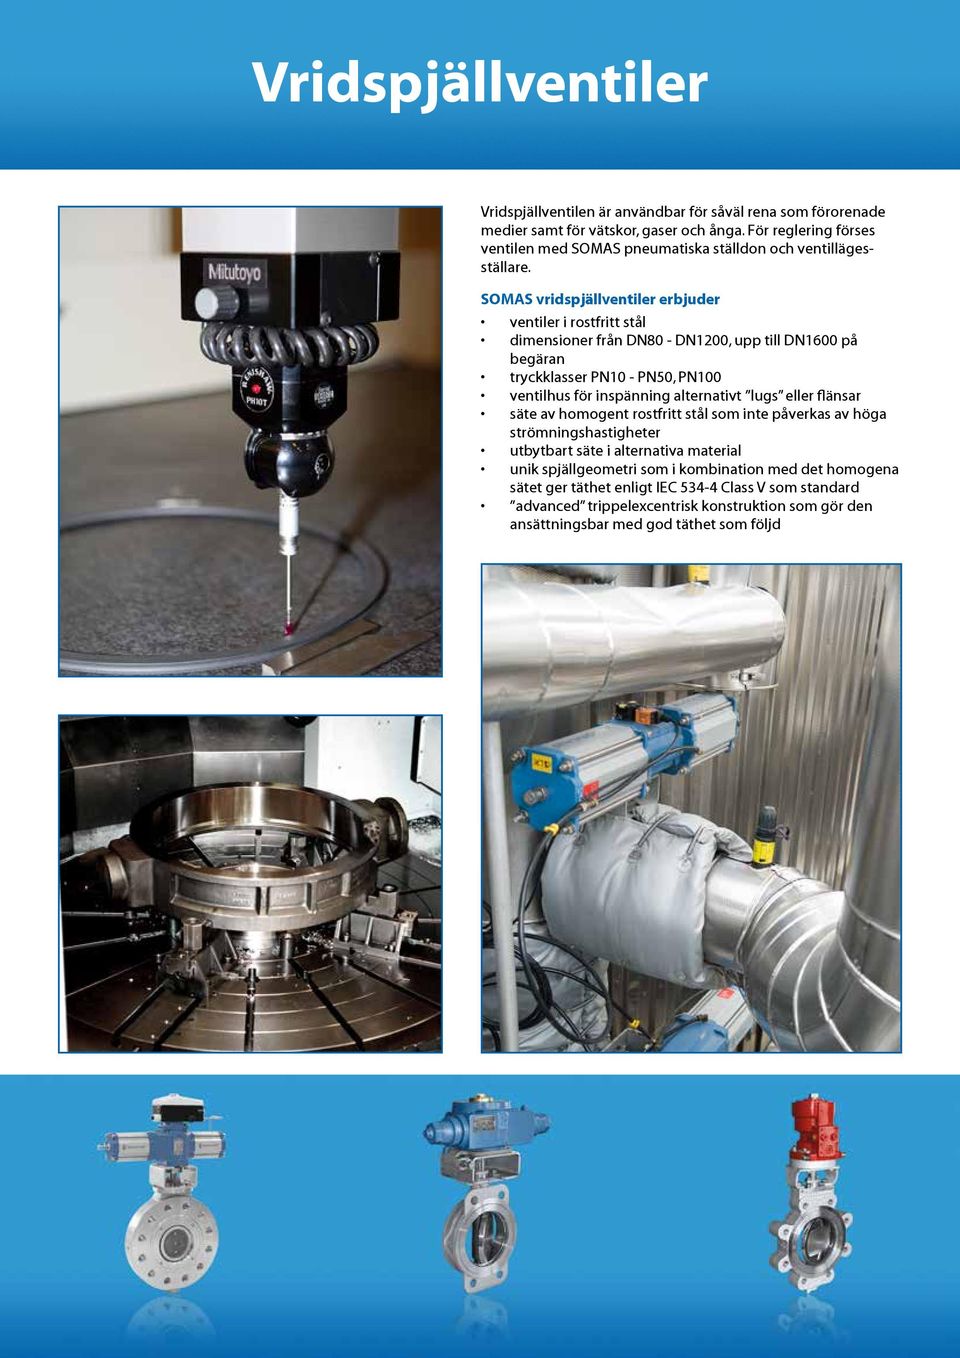 SOMAS vridspjällventiler erbjuder ventiler i rostfritt stål dimensioner från DN80 - DN1200, upp till DN1600 på begäran tryckklasser PN10 - PN50, PN100 ventilhus för inspänning